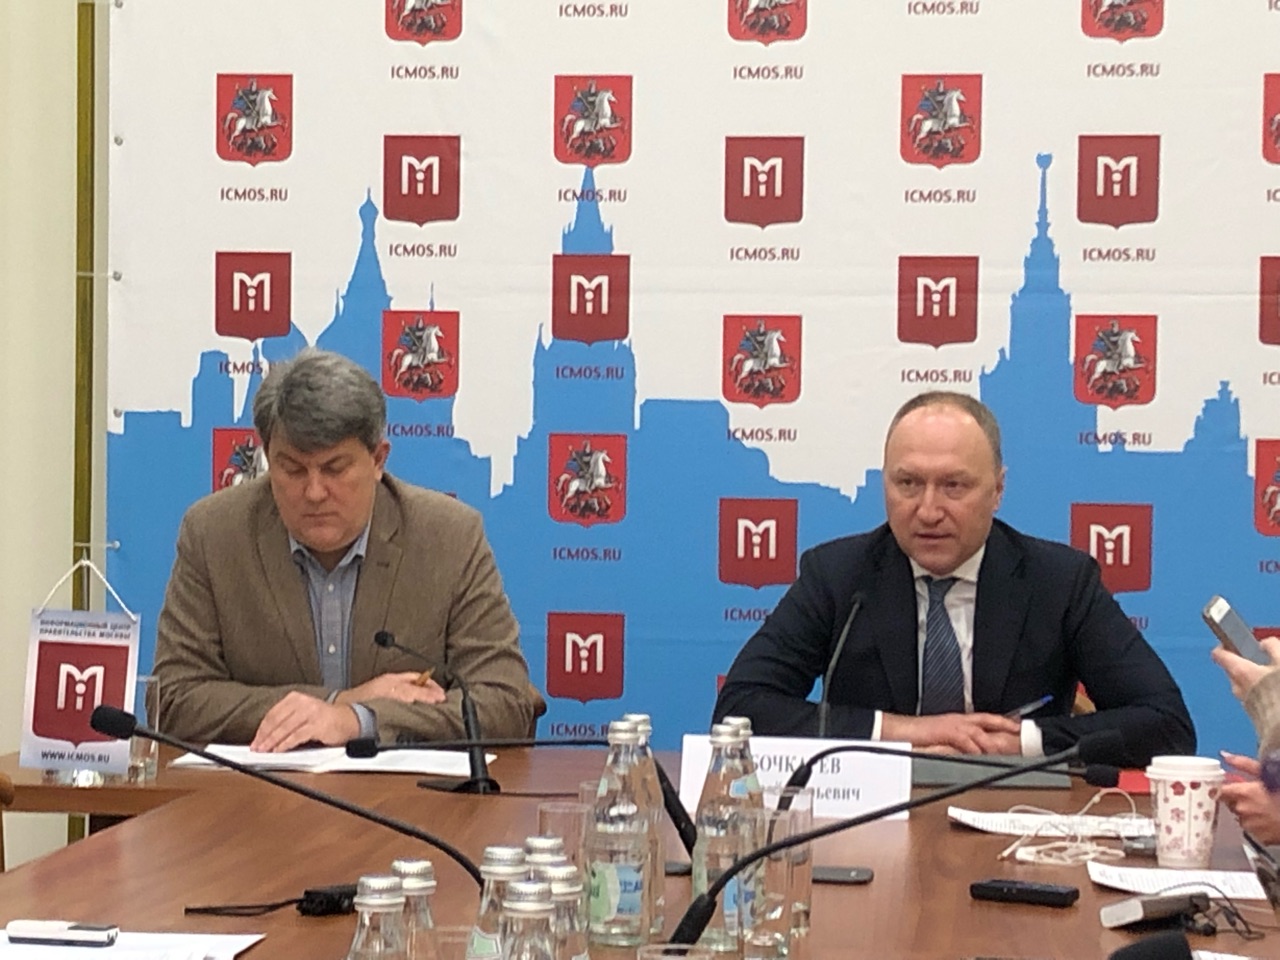 Результаты реализации адресной инвестиционной программы обсудили в Москве